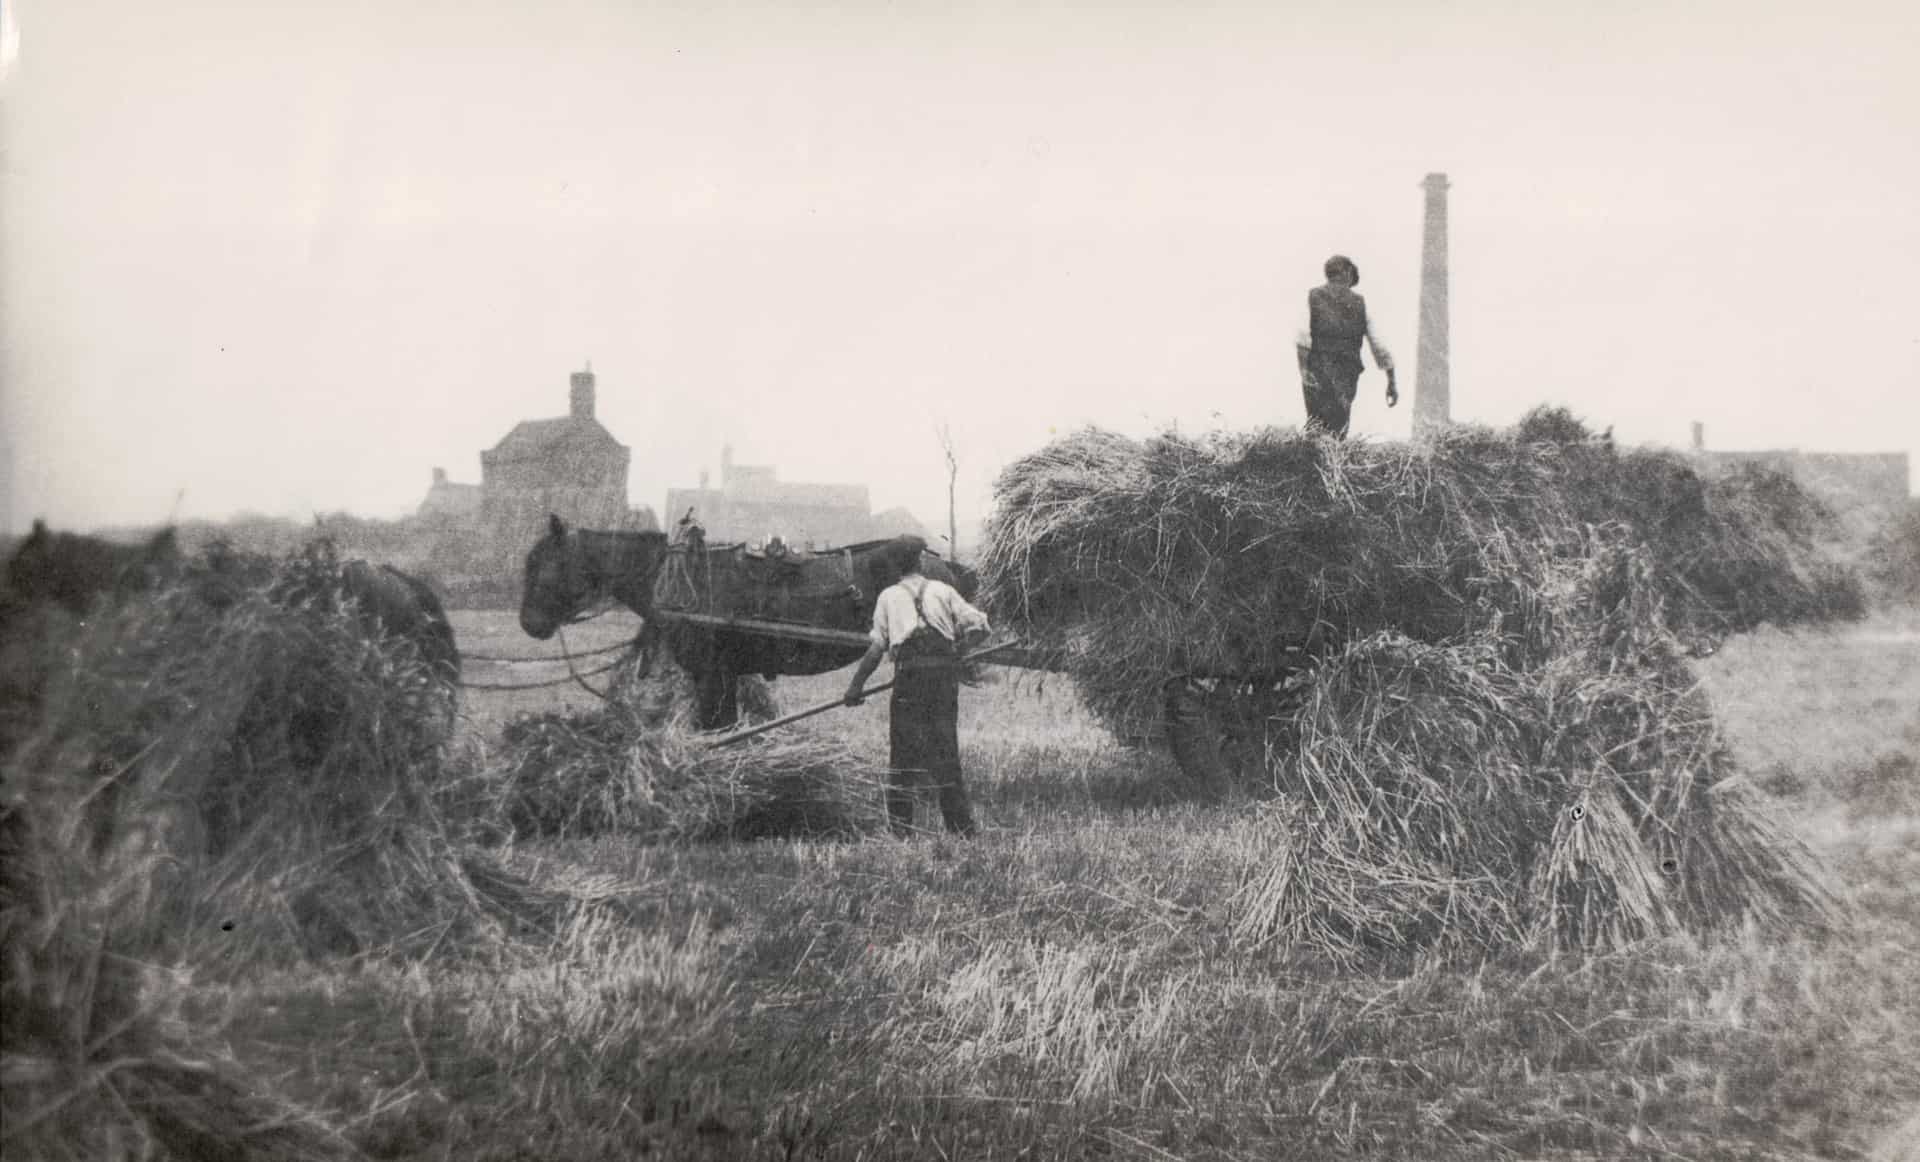 Wheat field, Lion Farm. Probably taken 1930s